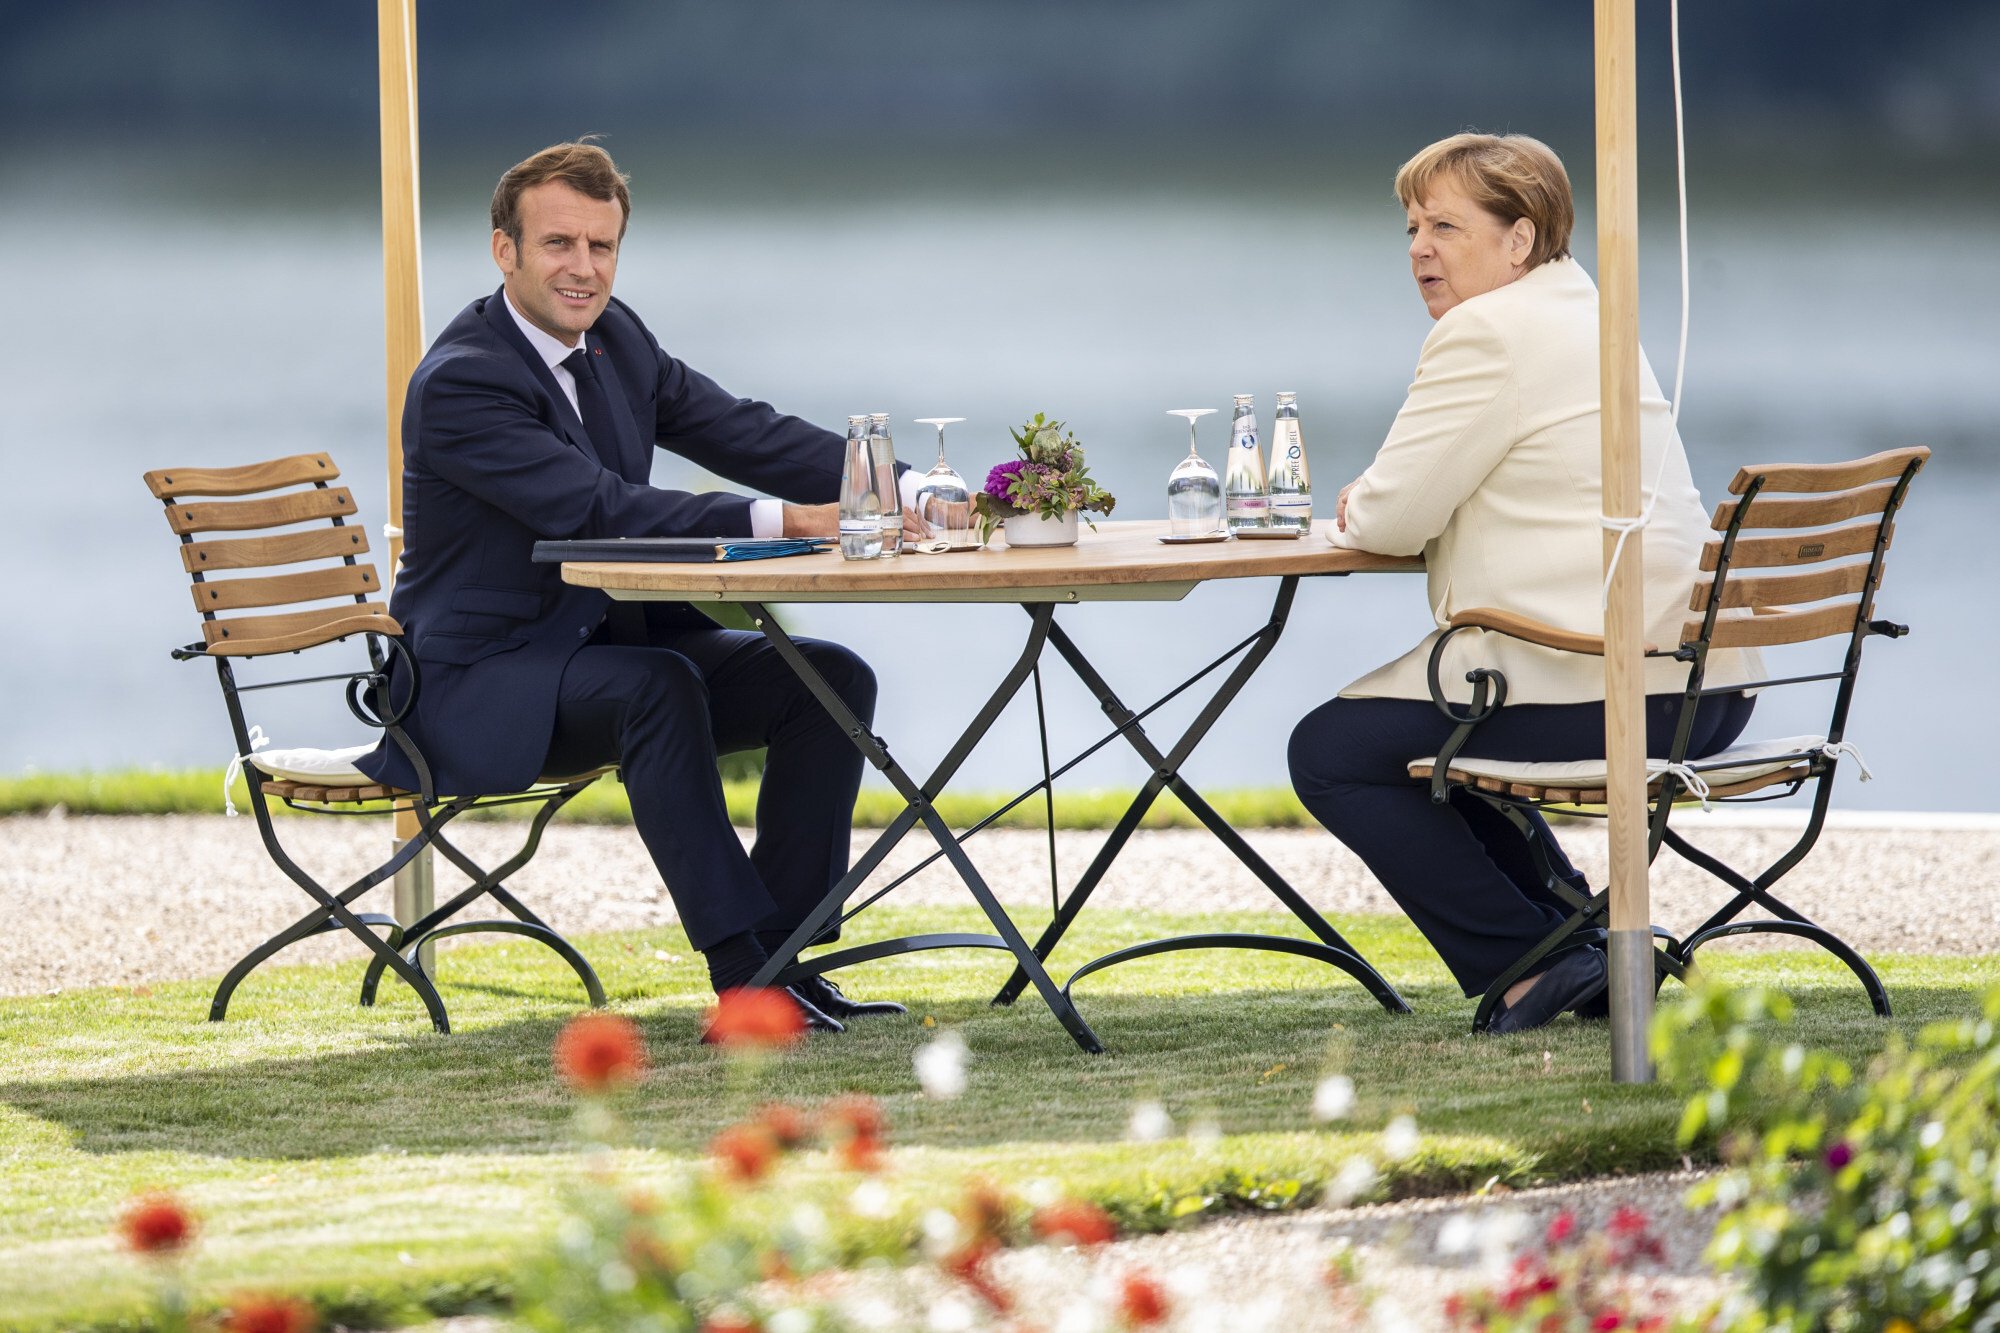 Vào thời điểm cao điểm của đại dịch COVID-19 vào tháng 6/2020, bà Merkel đã gây ấn tượng với một bộ trang phục đơn sắc - áo khoác trắng kết hợp với quần lọt khe màu đen - khi gặp Tổng thống Pháp Emmanuel Macron tại Đức.